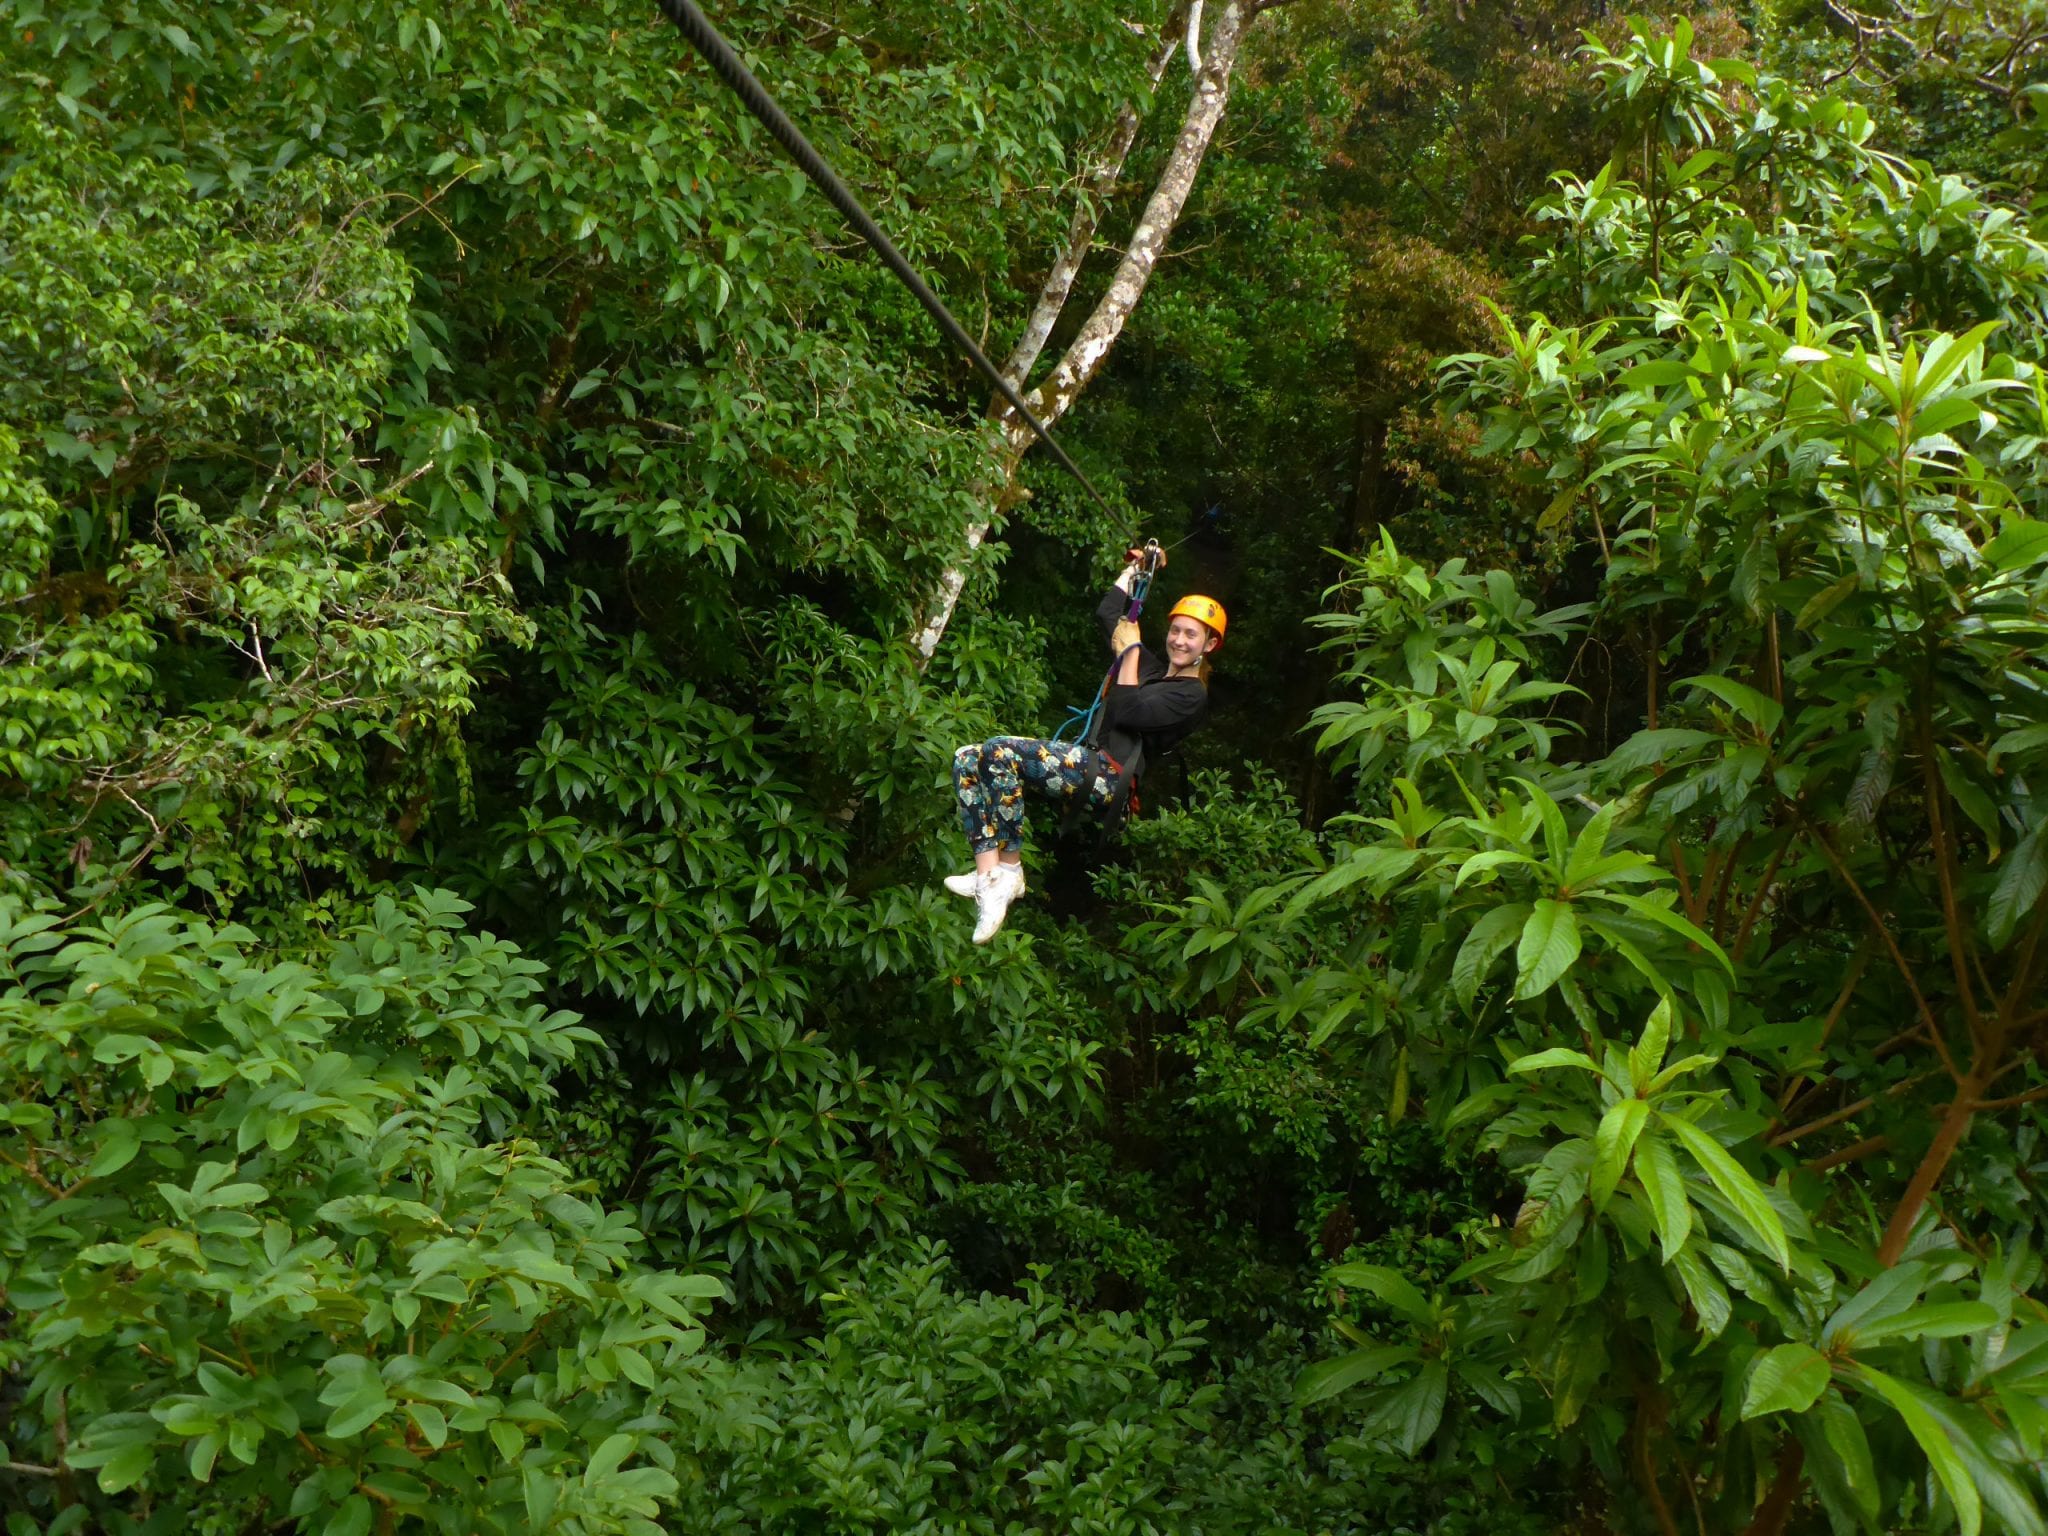 Ziplinen ziplining in Costa Rica